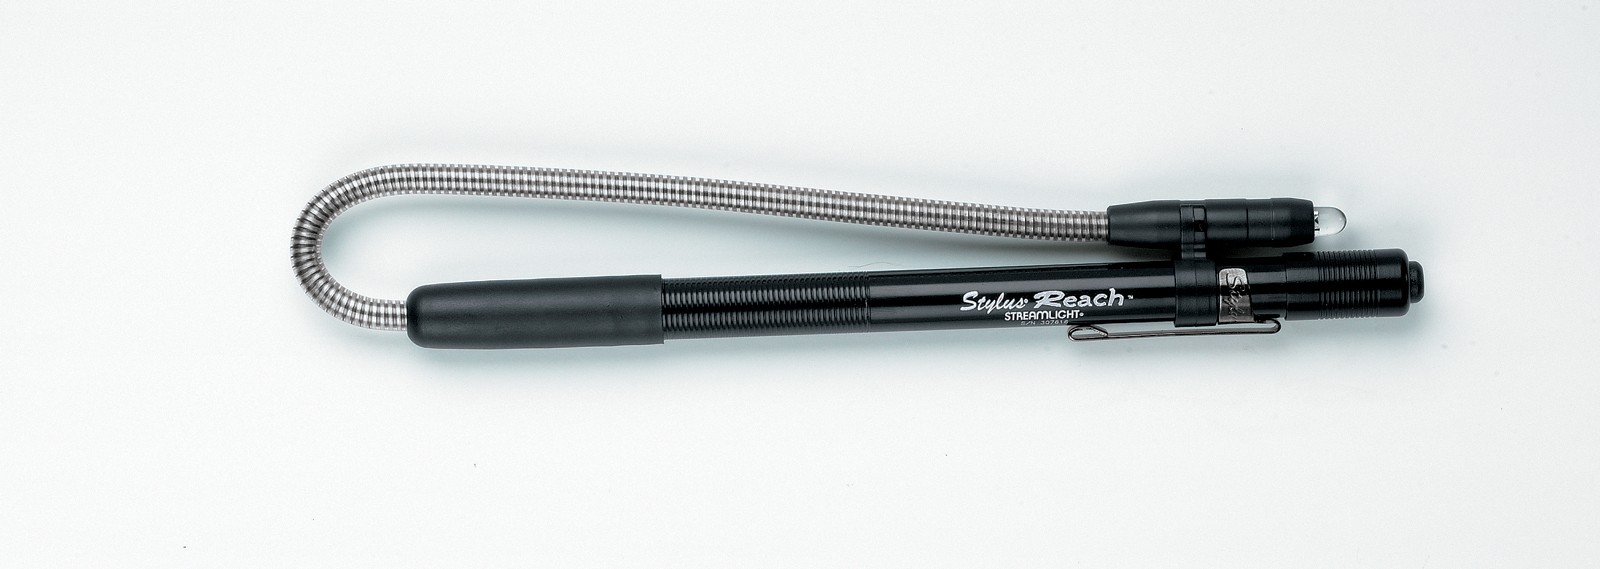 Вибухобезпечний ліхтар у вигляді ручки Stylus® Reach Фото 3